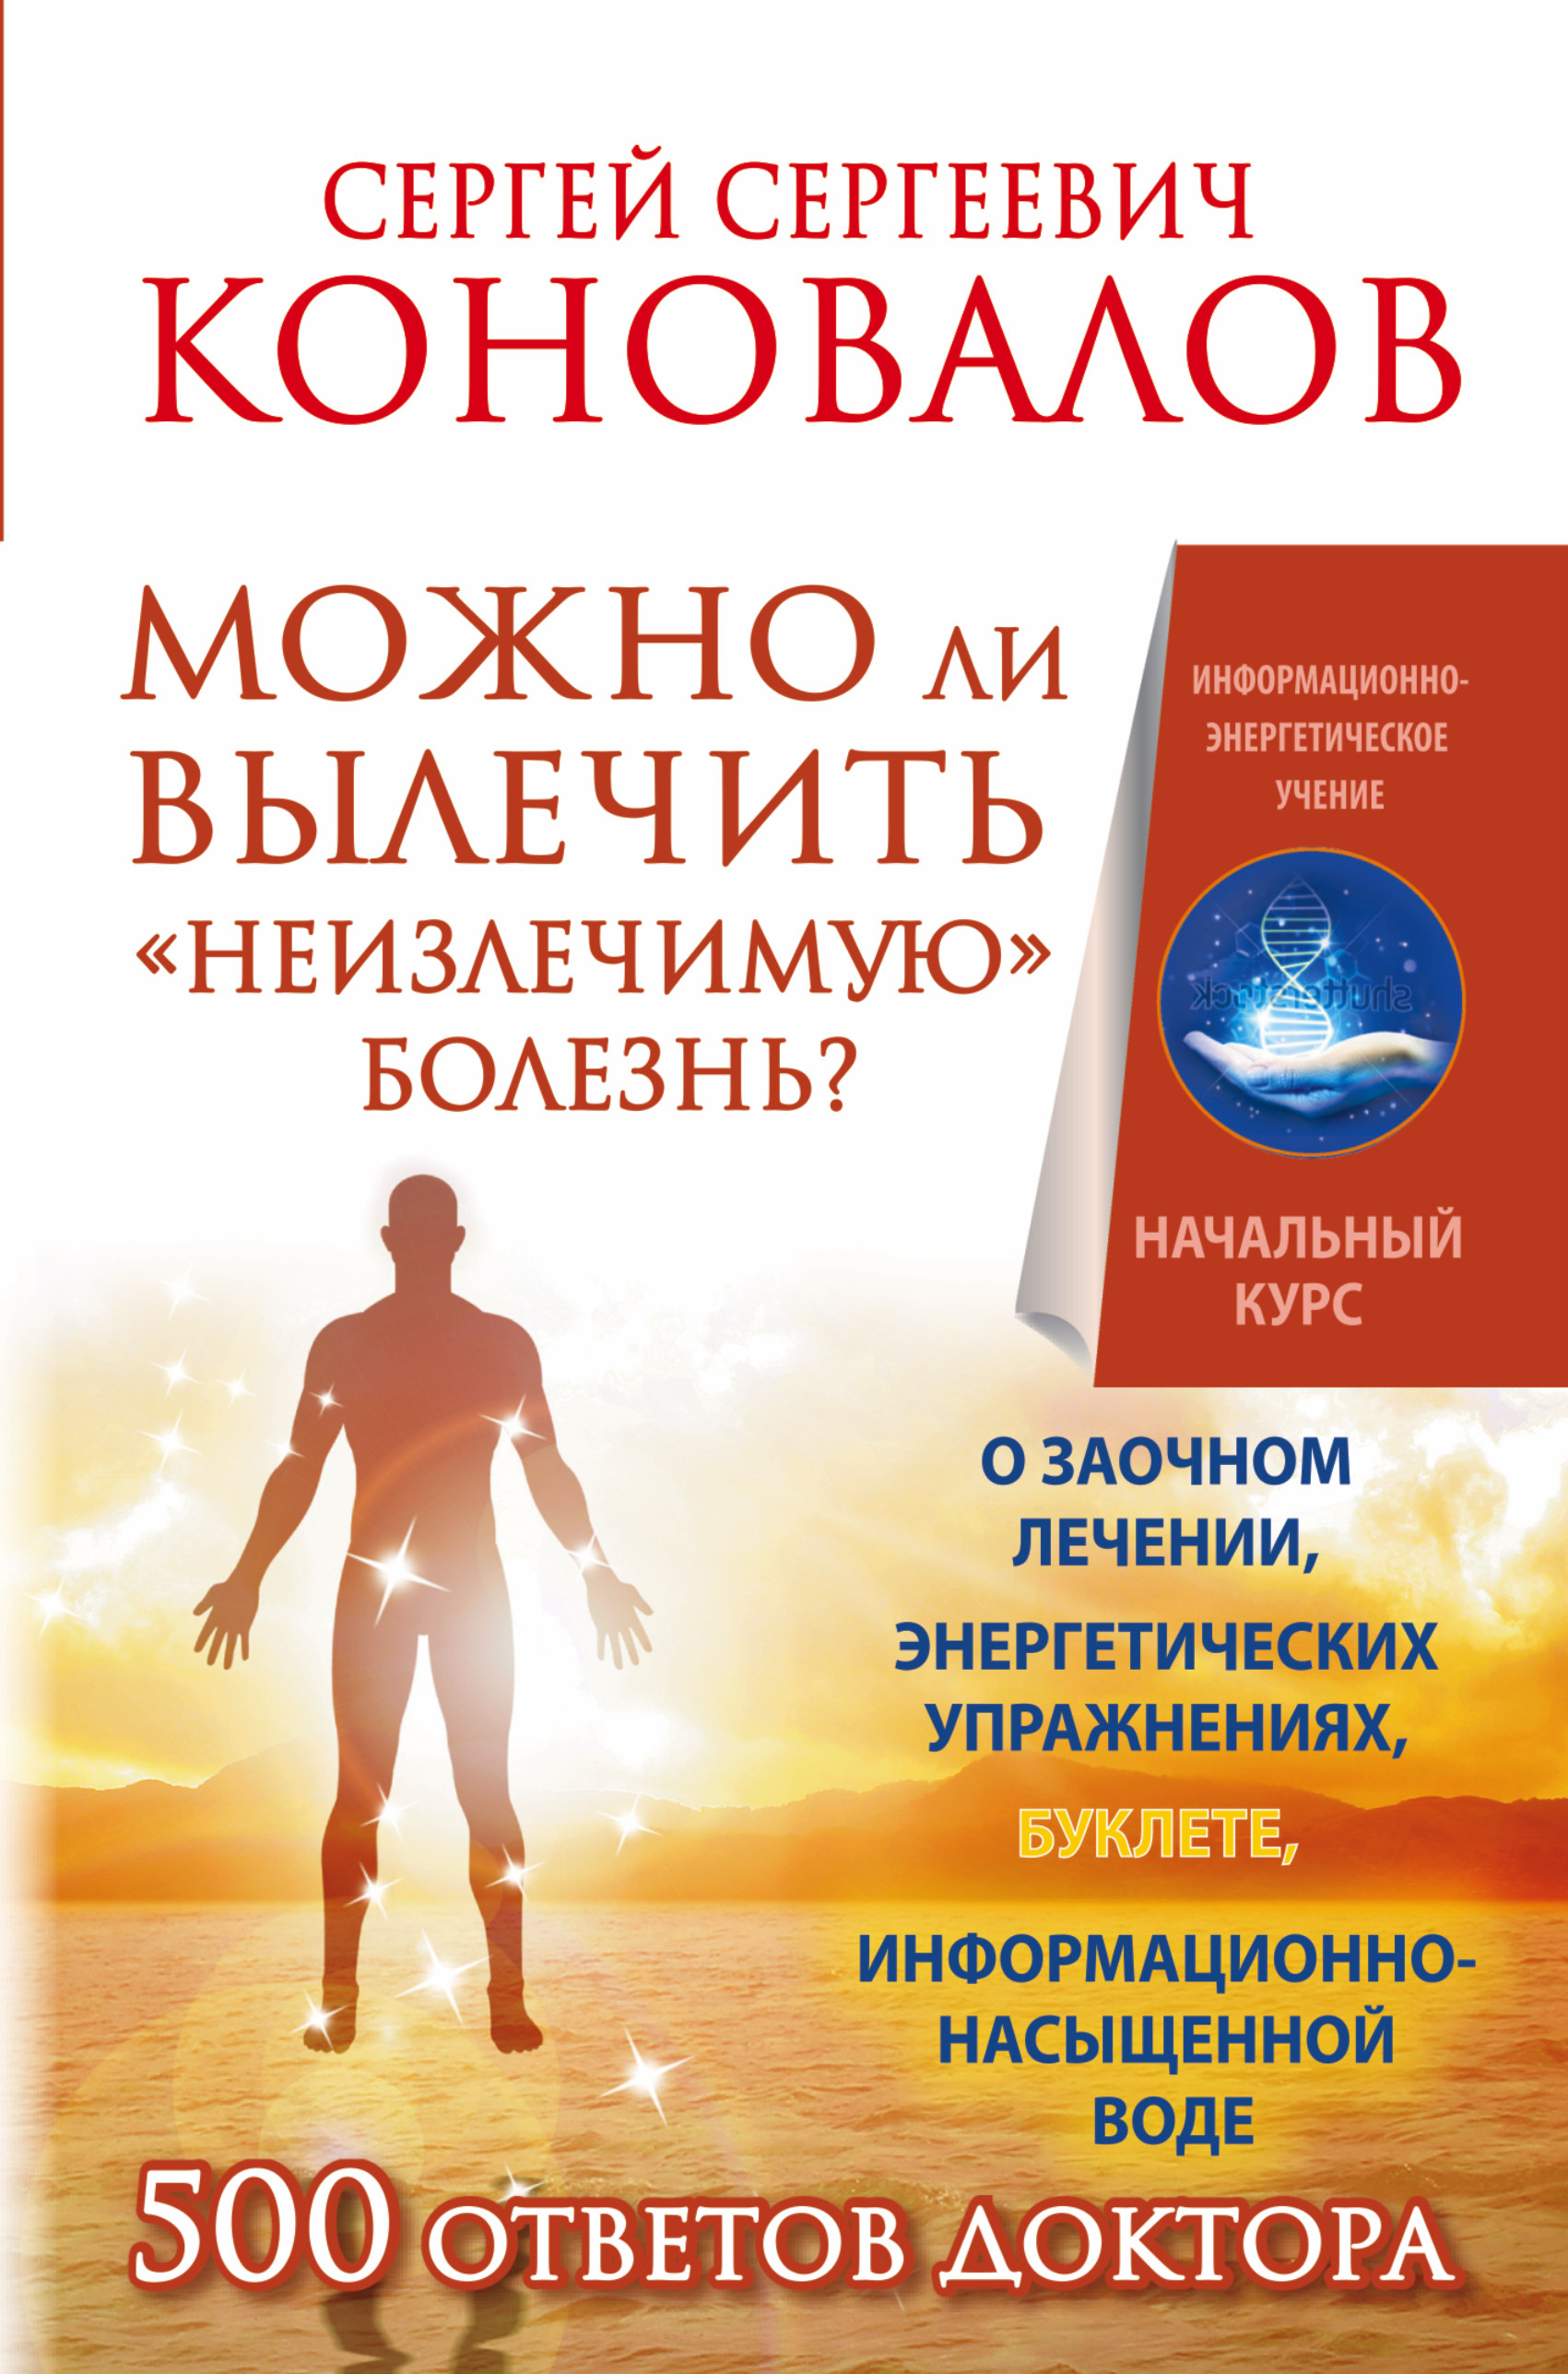 https://cdn.eksmo.ru/v2/ASE000000000721848/COVER/cover13d.jpg